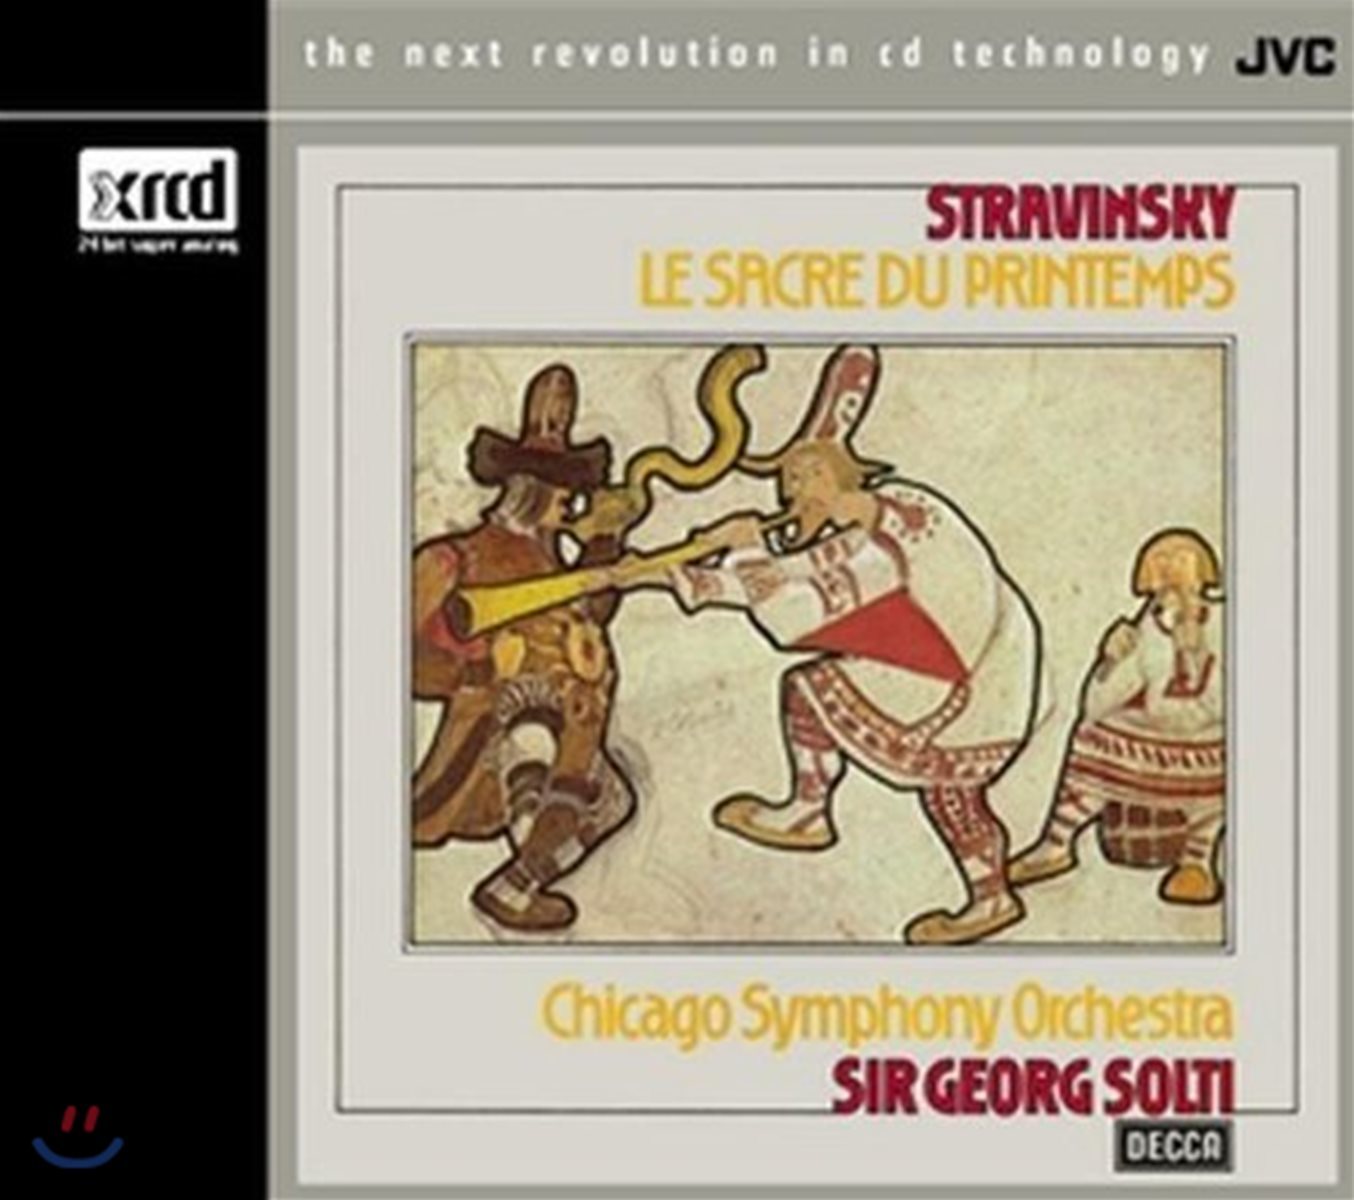 Georg Solti 스트라빈스키: 봄의 제전 - 시카고 교향악단, 게오르그 솔티 (Stravinsky: Le Sacre du Printemps) [XRCD]